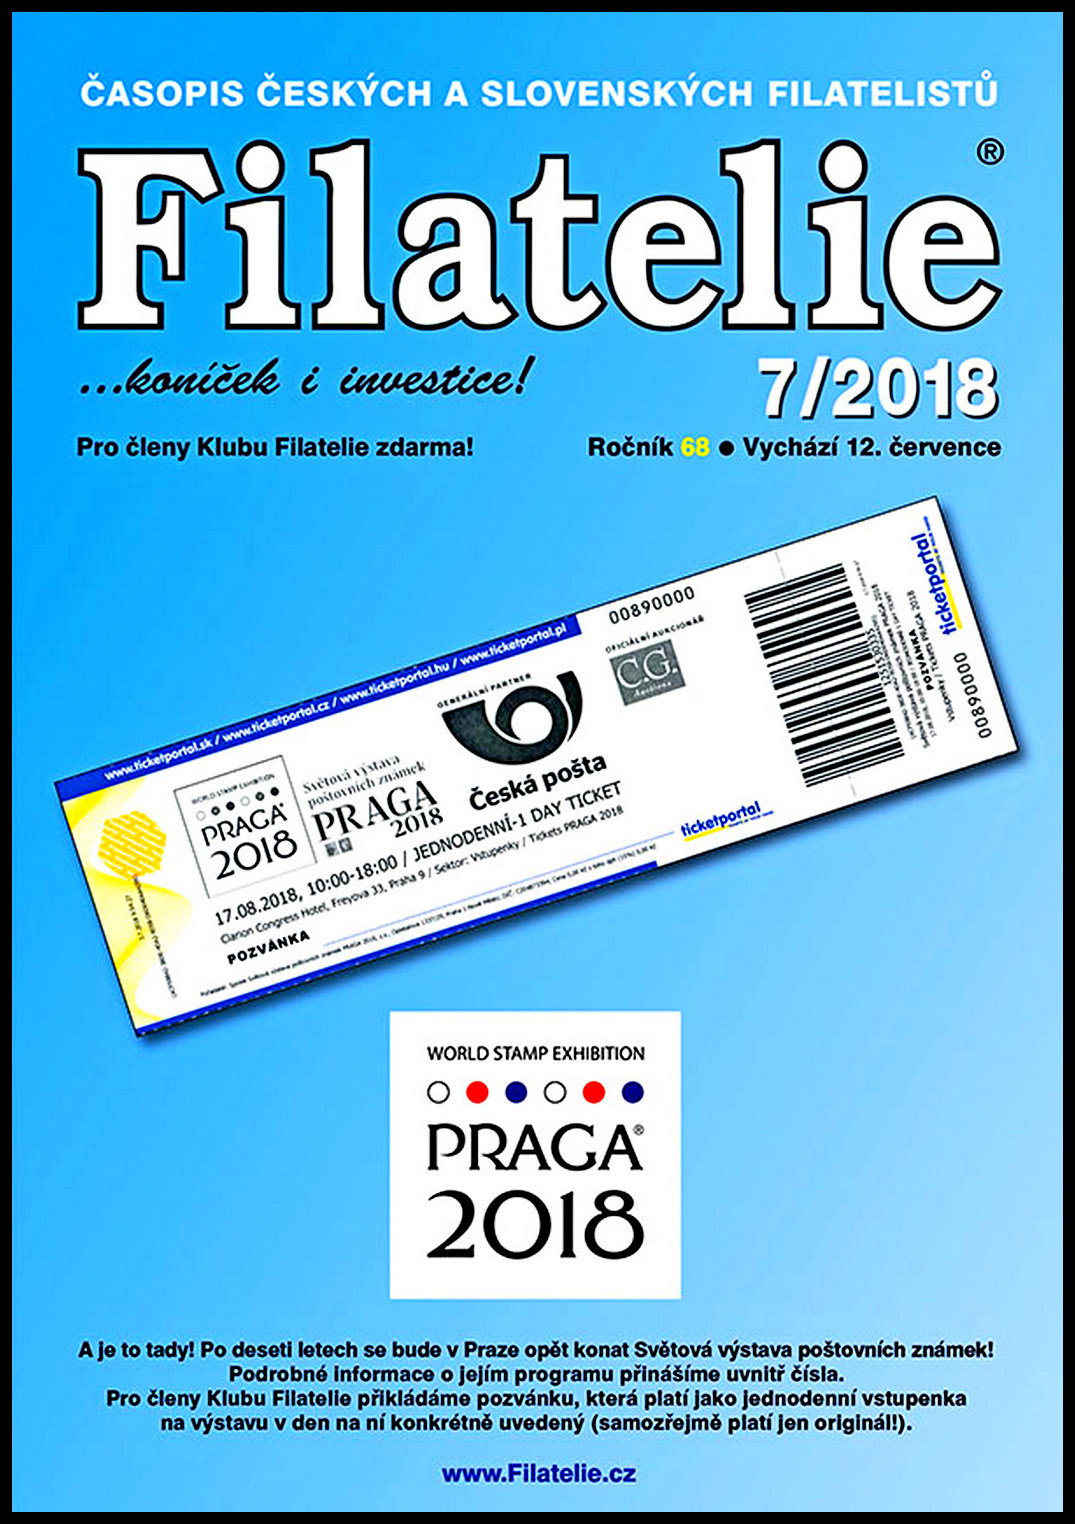 Časopis  Filatelie 7 / 2018(s vystřiženým kuponem - inzerce, bez vstupenky PRAGA